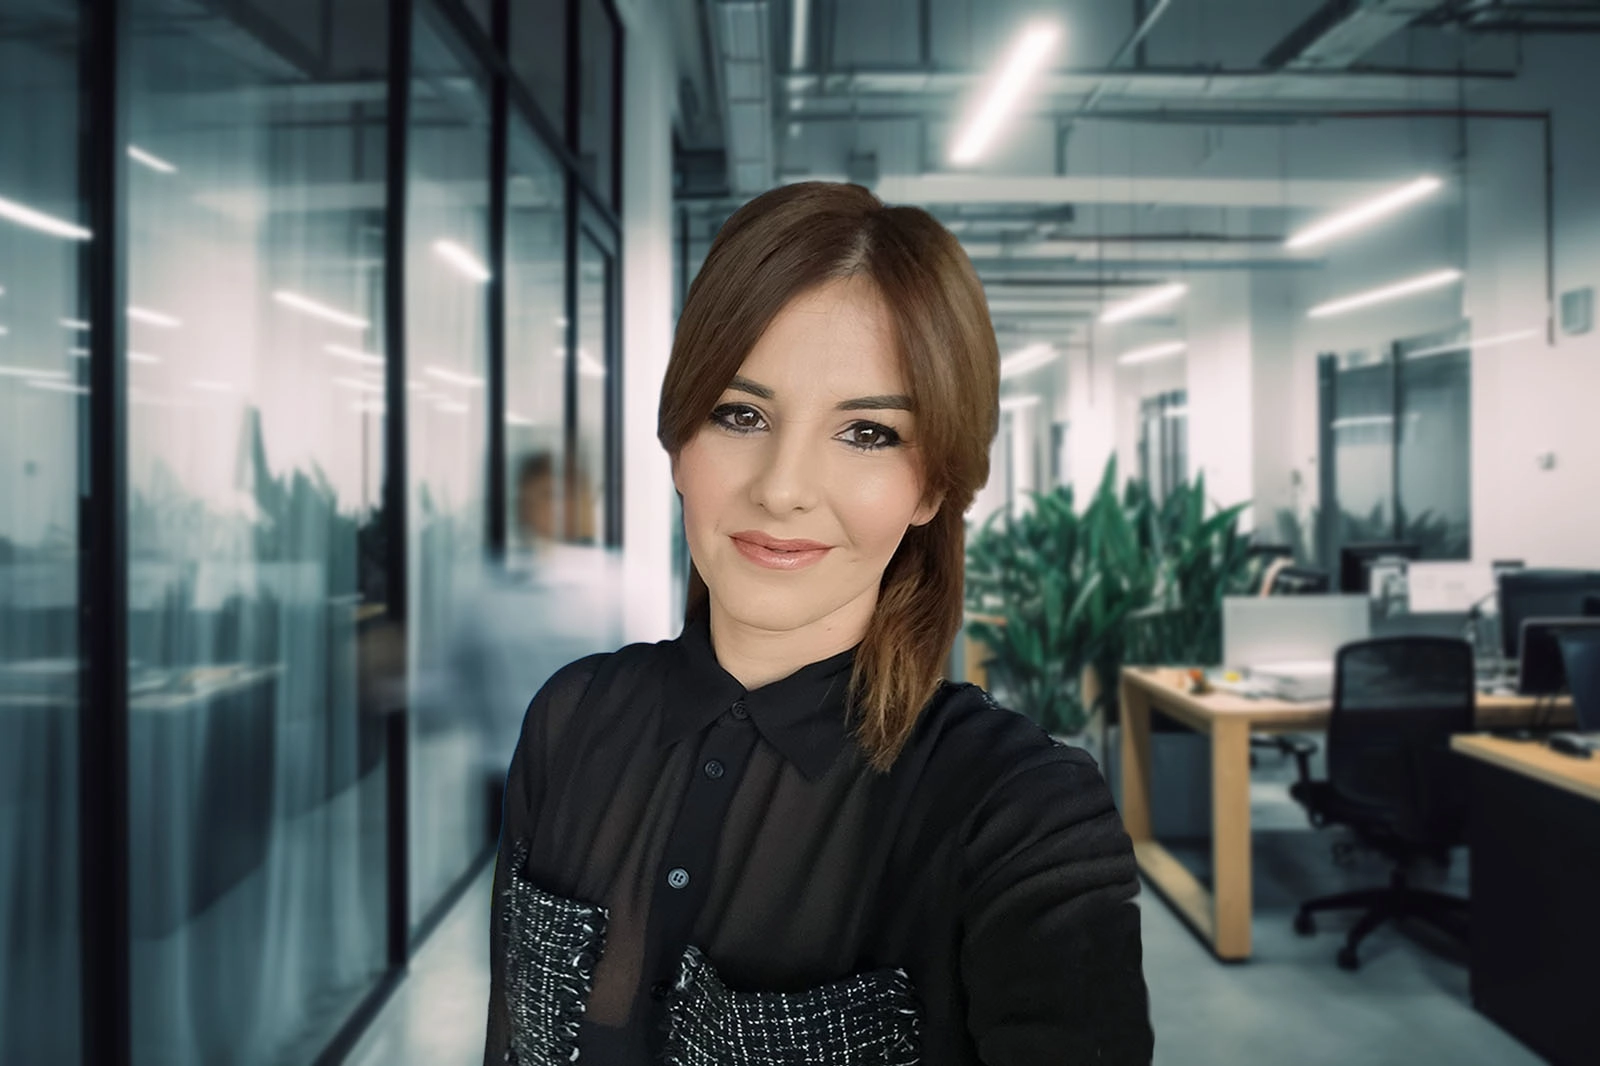 Marijana Pejčinović – nastavak pozitivne priče „Žene lideri“ u ASA CENTRAL osiguranju